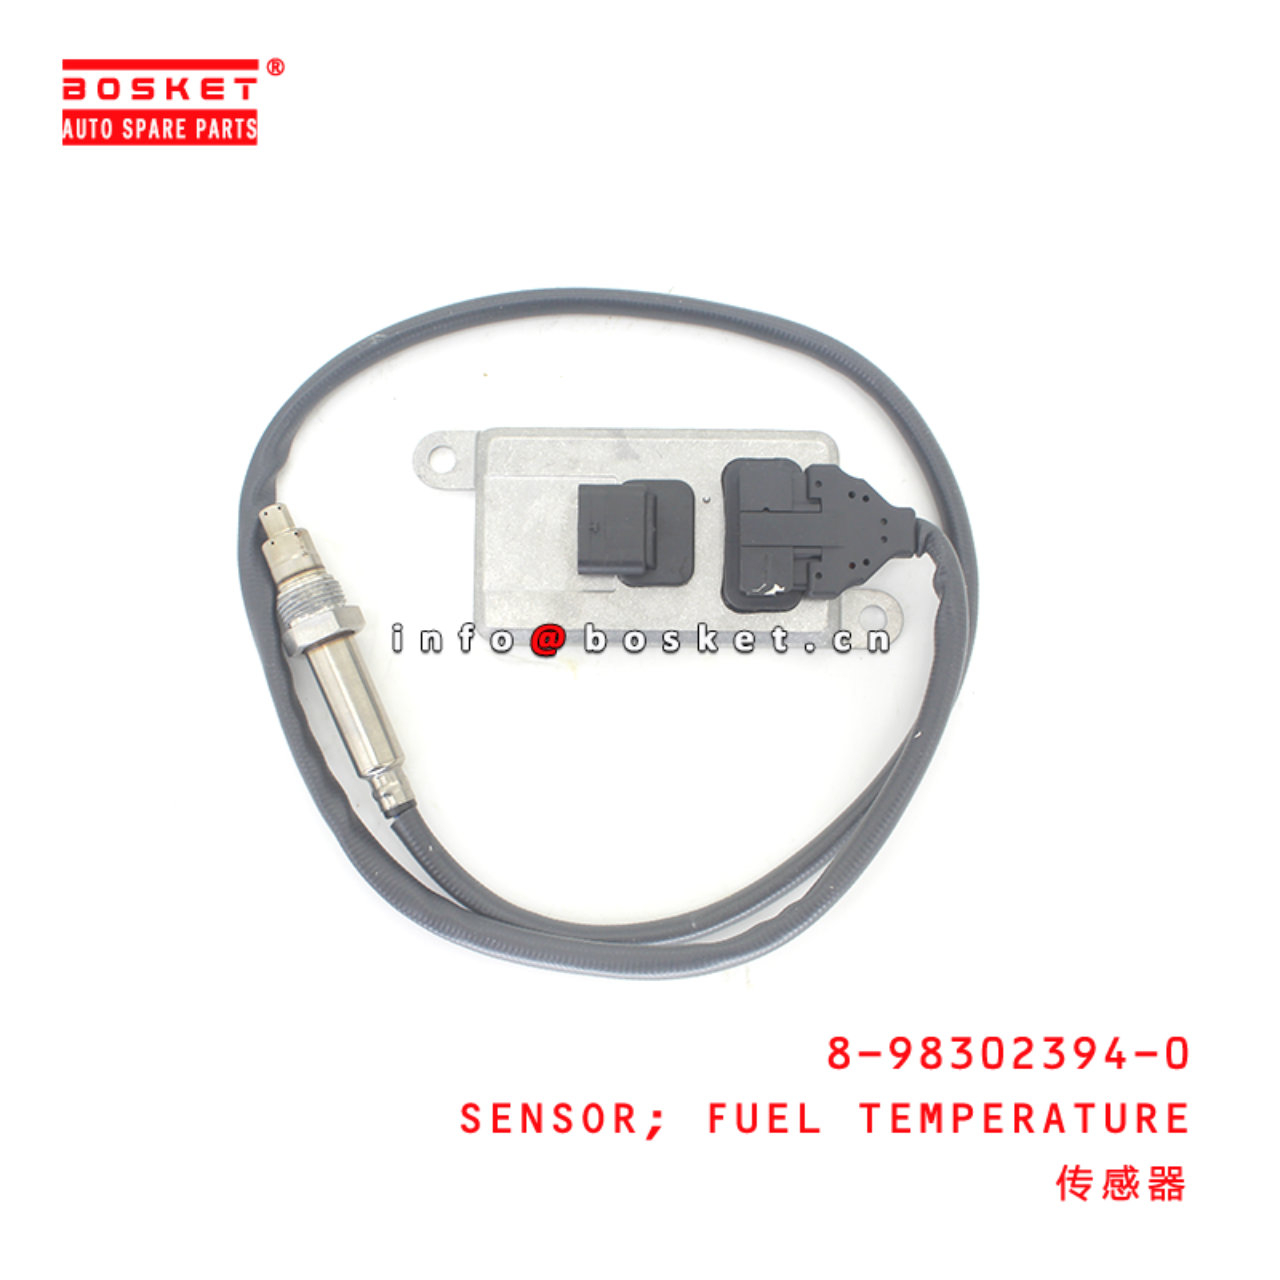 8-98302394-0 Fuel Temperature Sensor suitable for ISUZU 8983023940